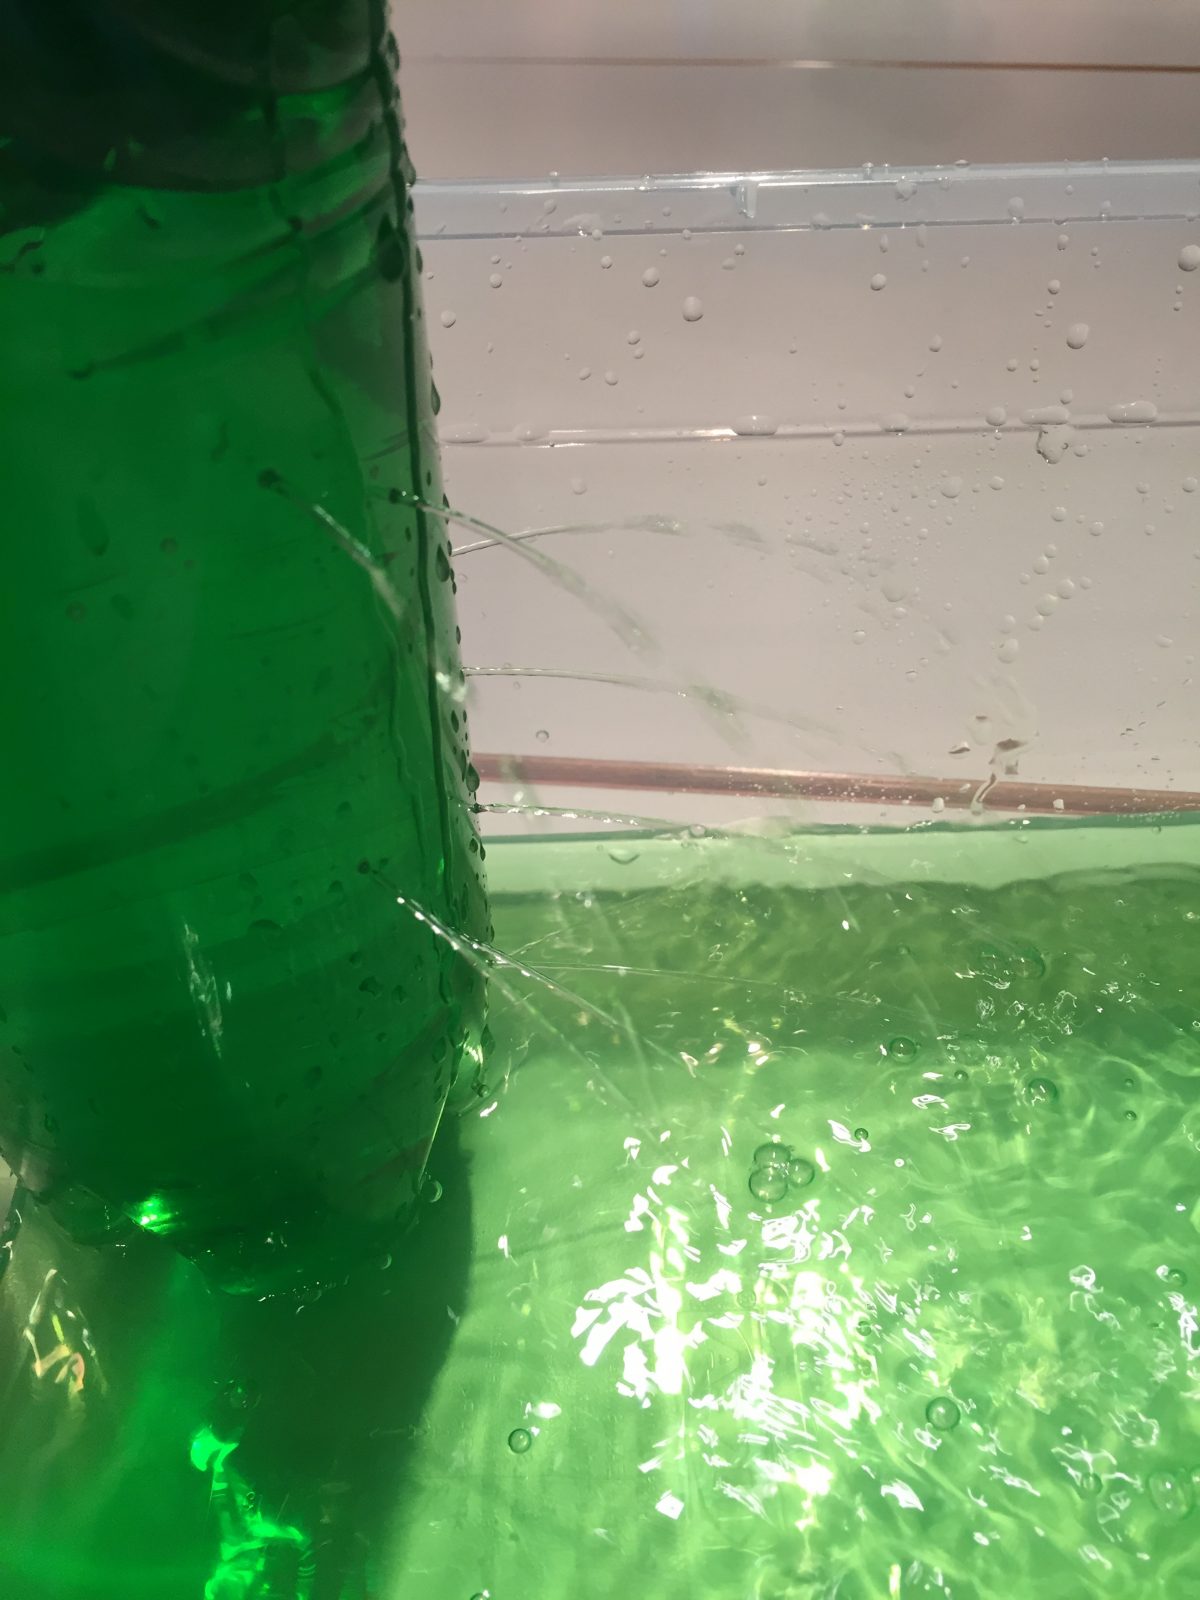 Aus einer Plastikflasche strömen Wasserstrahlen auf unterschiedlicher Höhe heraus. Das Wasser ist grün angefärbt und wird in einer Schale aufgefangen.